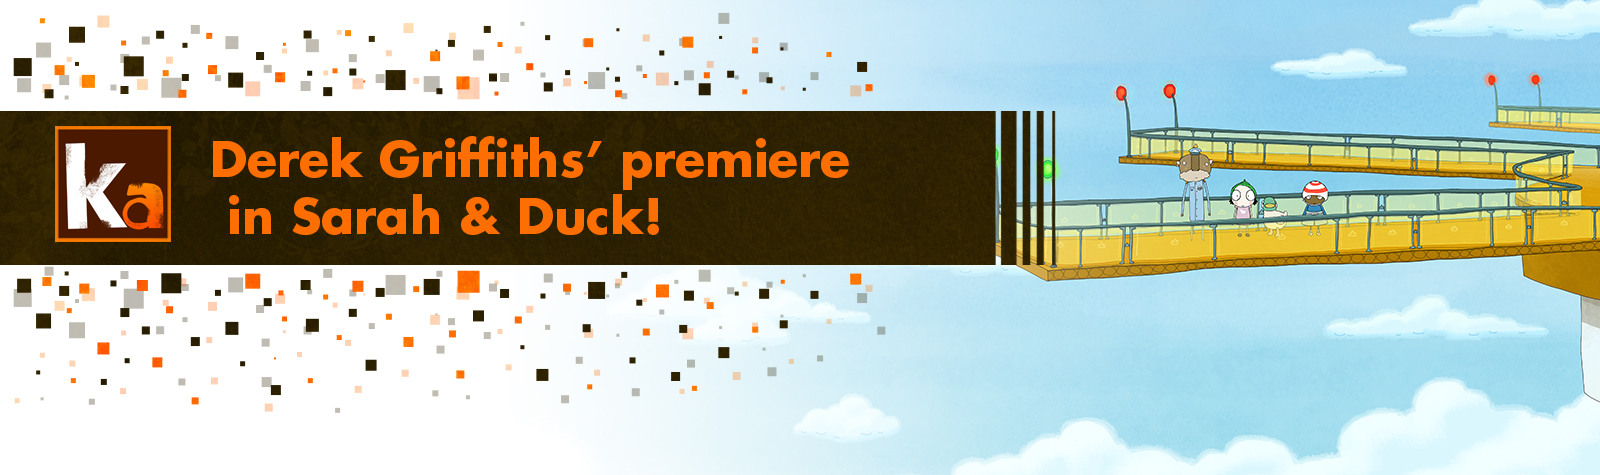 Derek Griffiths’ premiere in Sarah & Duck!